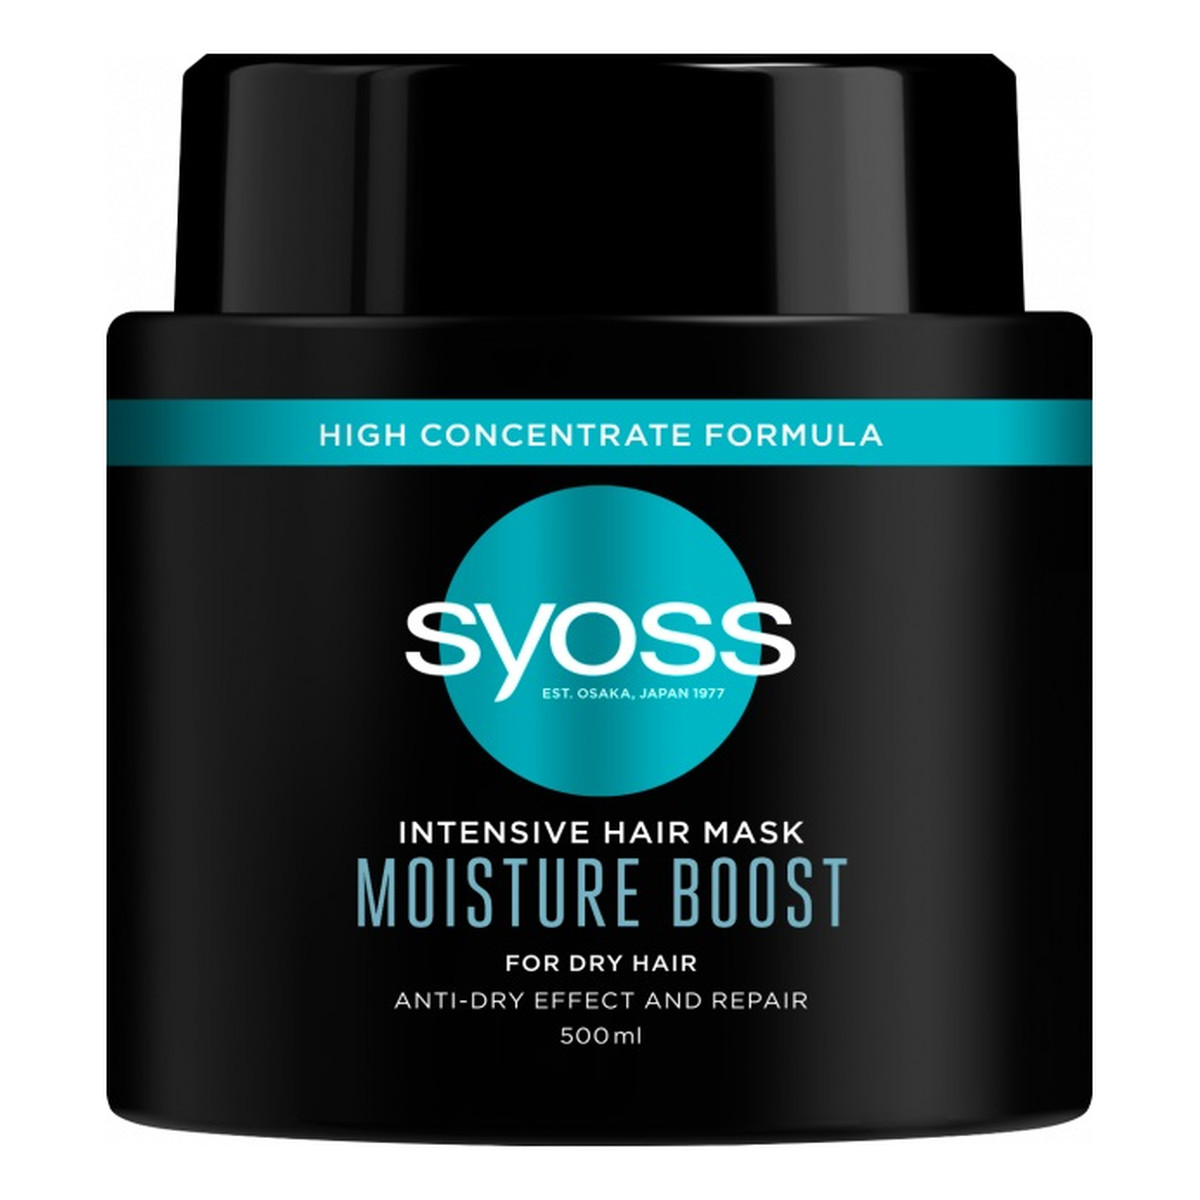 Syoss Intensive hair mask moisture boost intensywnie regenerująca maska do włosów suchych i osłabionych 500ml